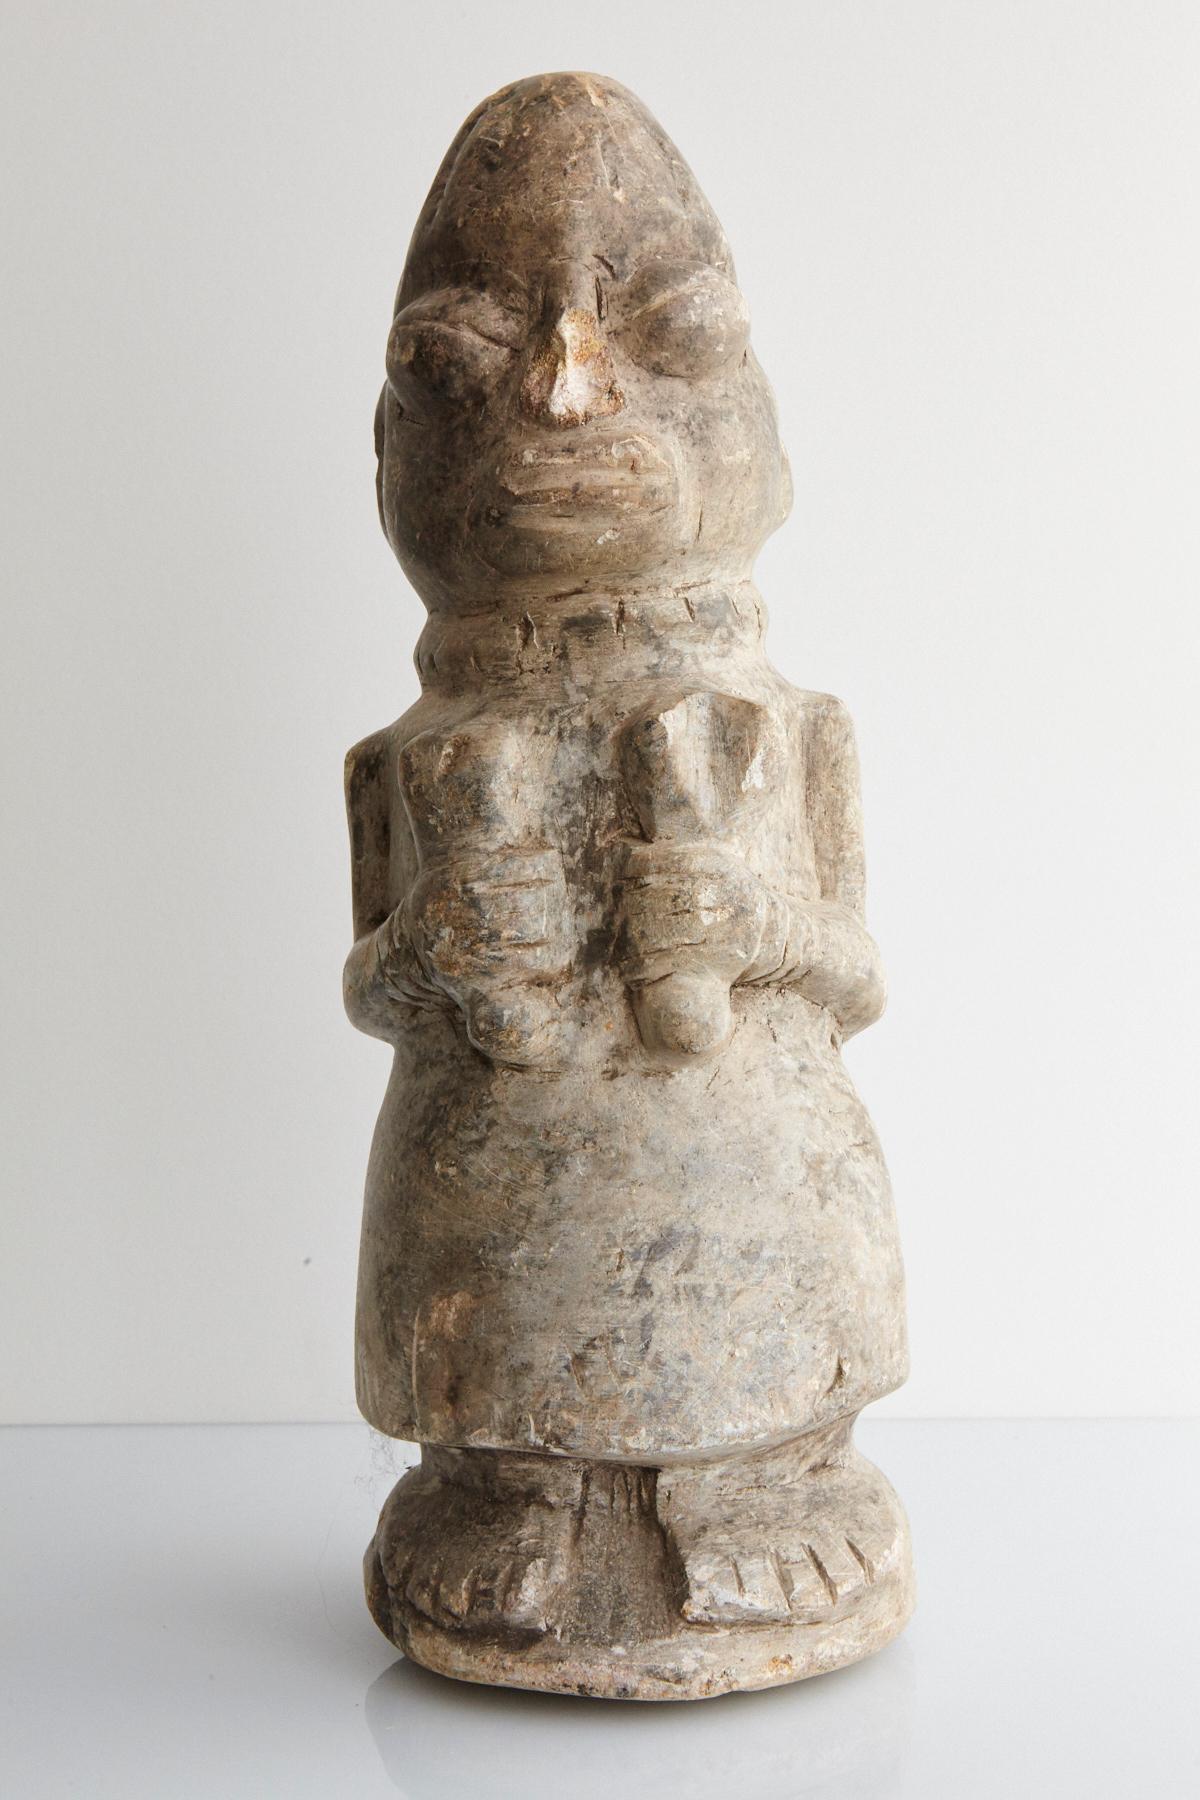 Un Nomoli est une figurine en pierre sculptée originaire de Sierra Leone et du Liberia. Ils sont généralement fabriqués en pierre ollaire, en calcaire ou en granit.

La sculpture représente une femme vêtue d'une robe et d'un collier, tenant